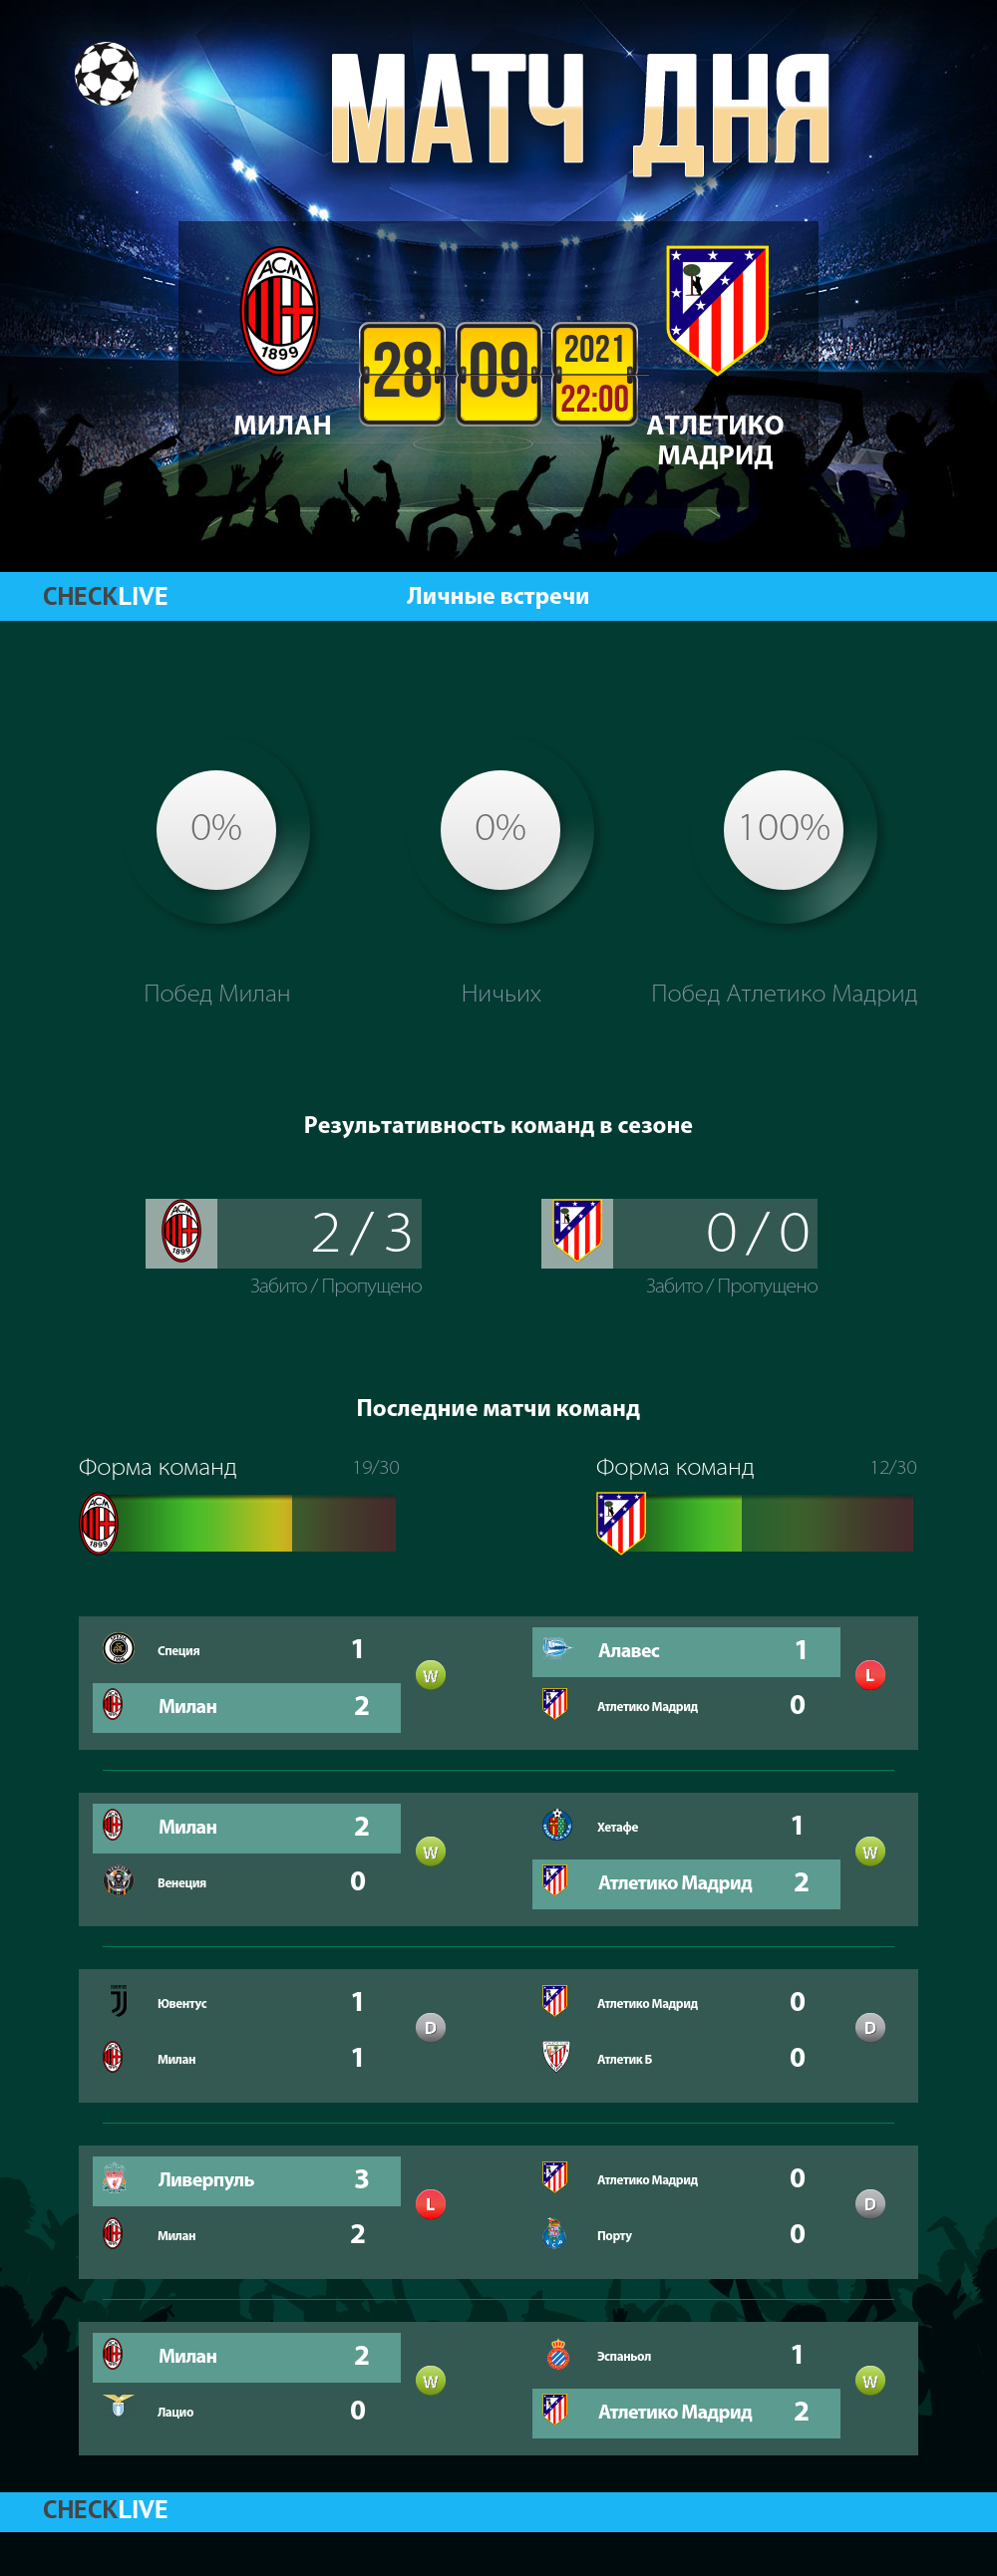 Инфографика Милан и Атлетико Мадрид матч дня 28.09.2021